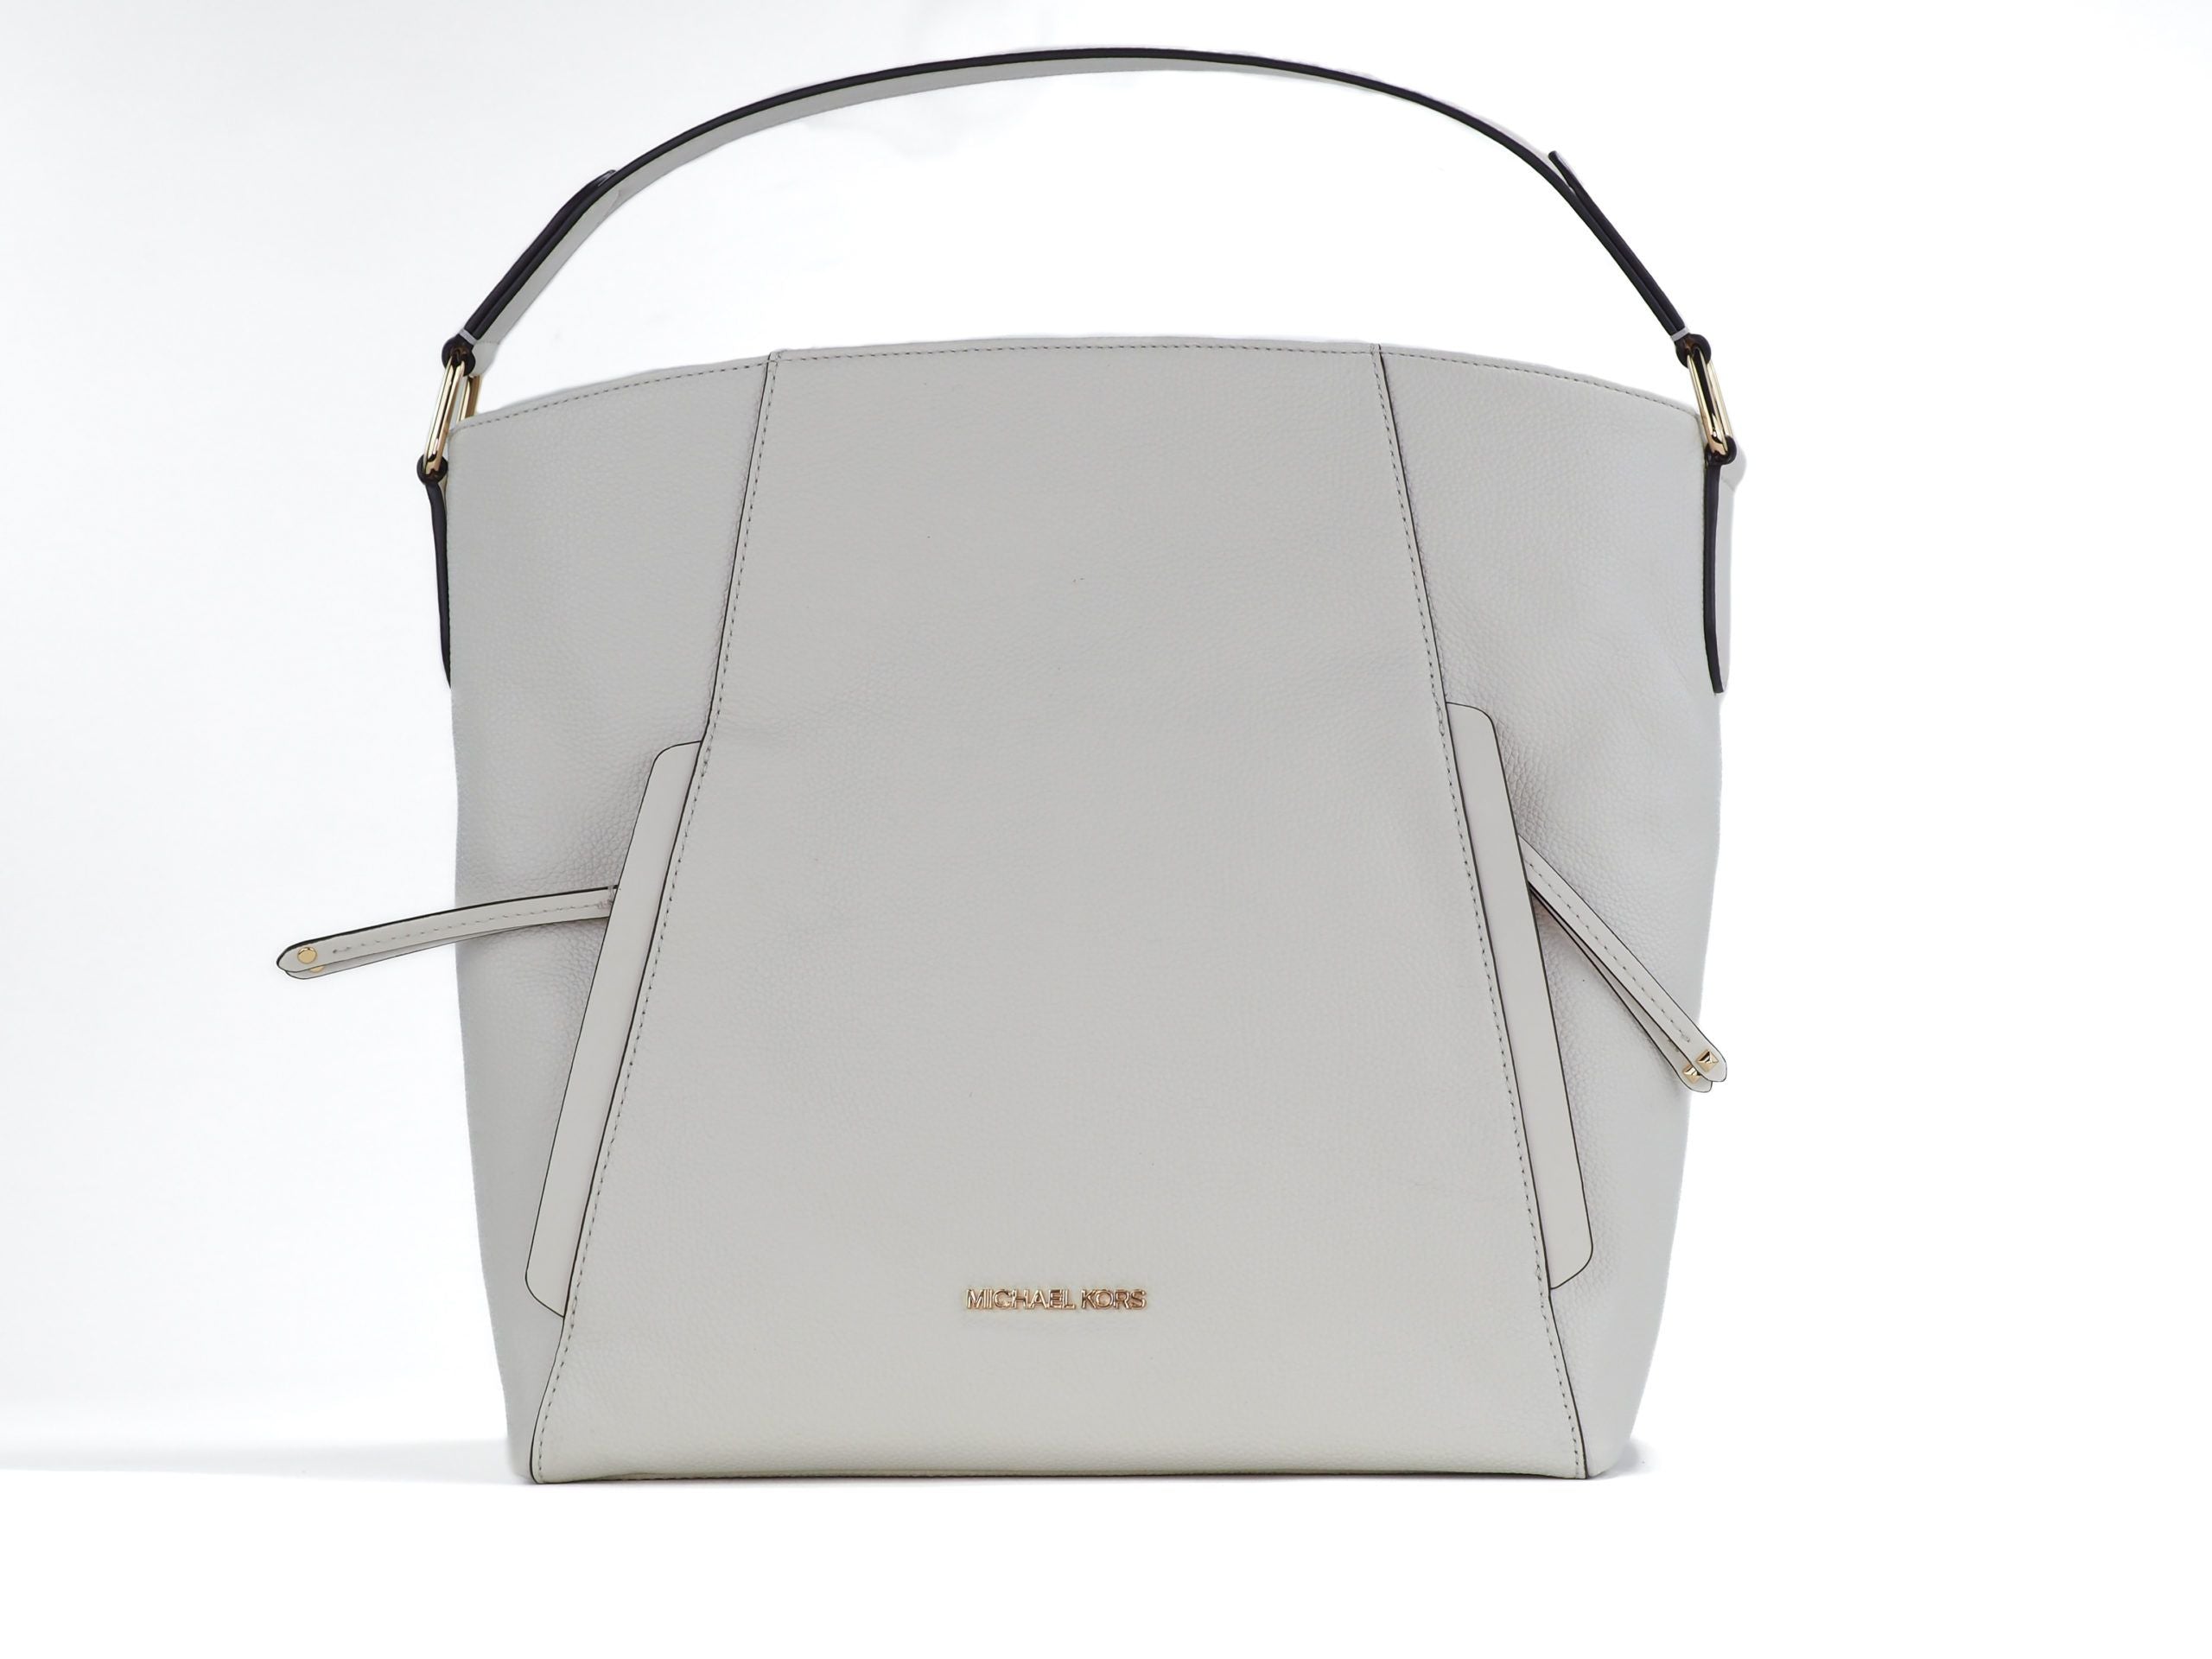 Michael Kors Evie Large Pebbled Leather Hobo Shoulder Bag Handbag (Light Cream)